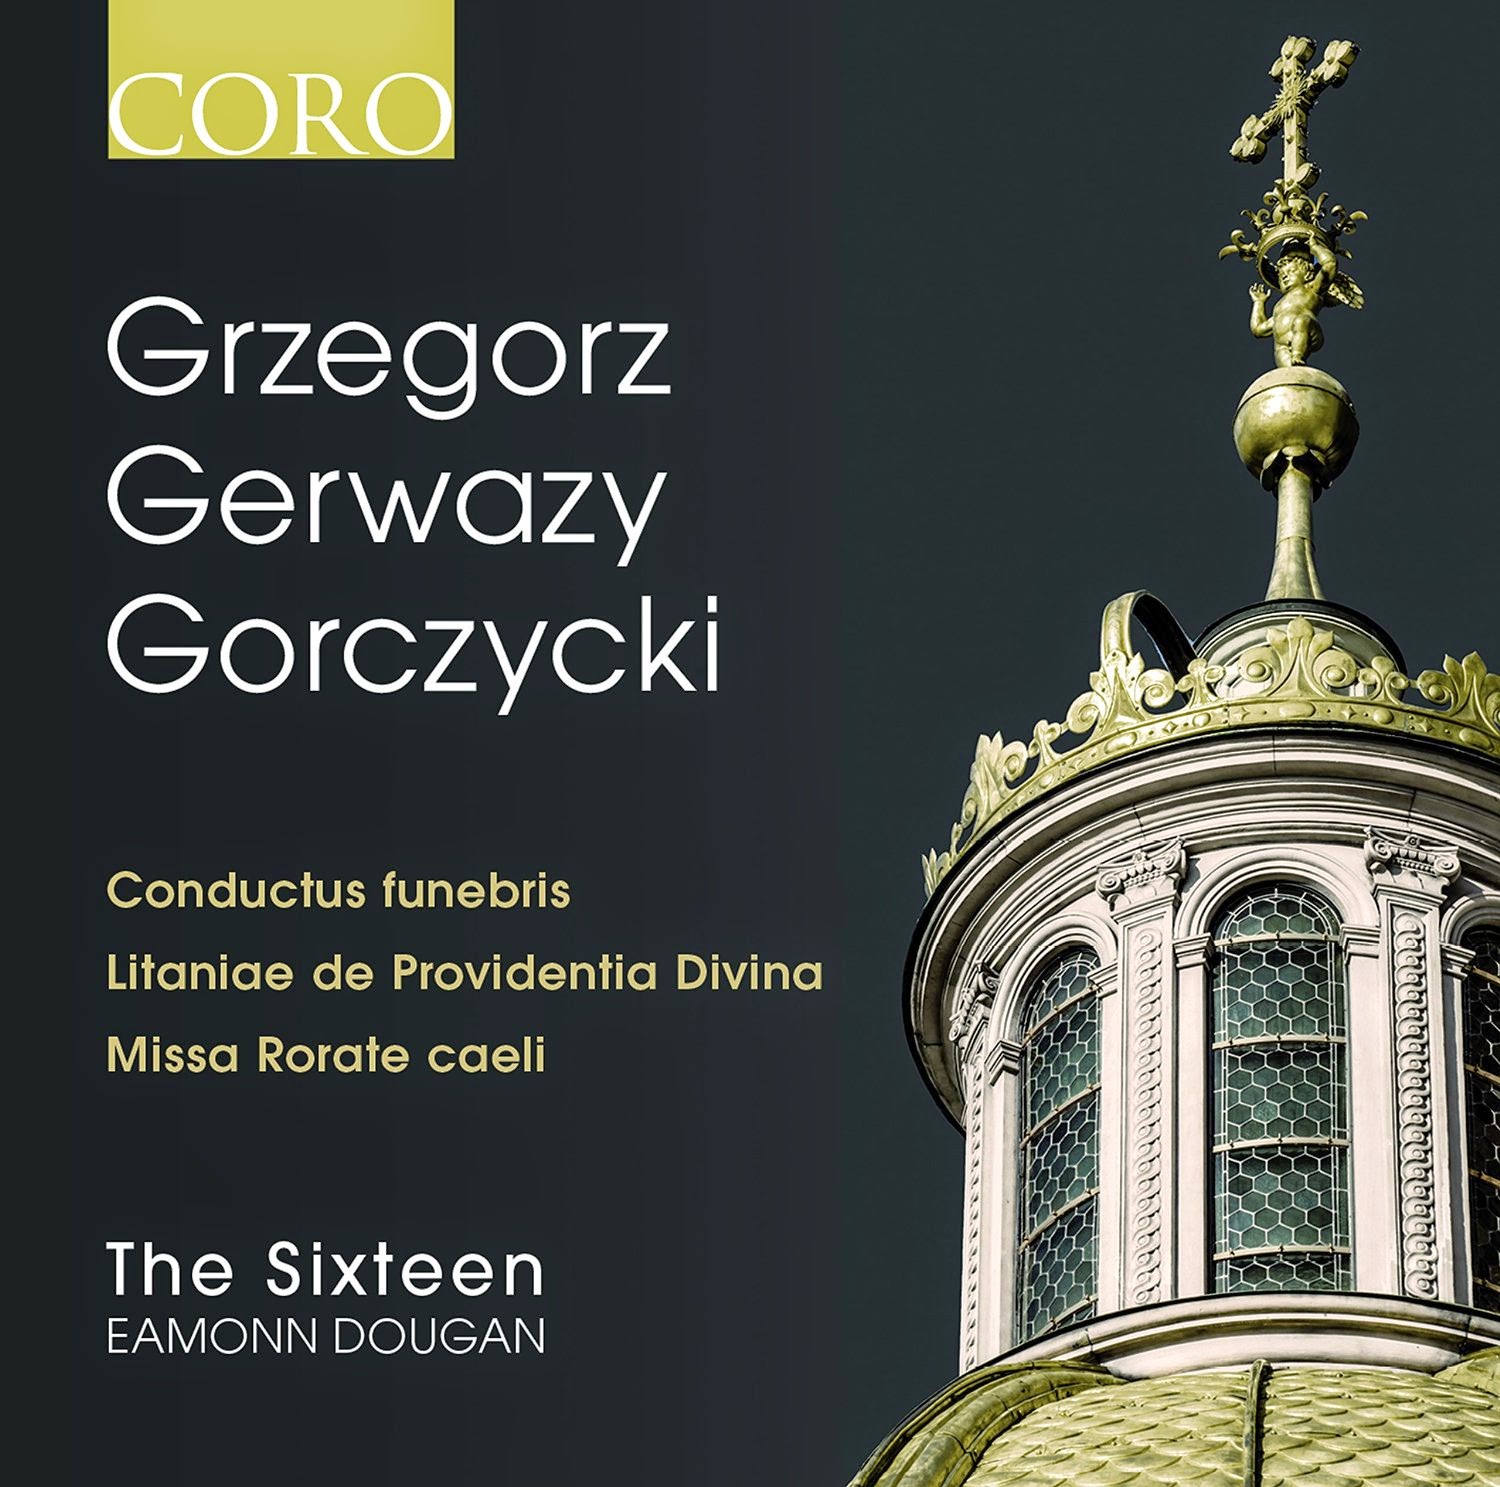 Grzegorz Gerwazy Gorczycki - Coro